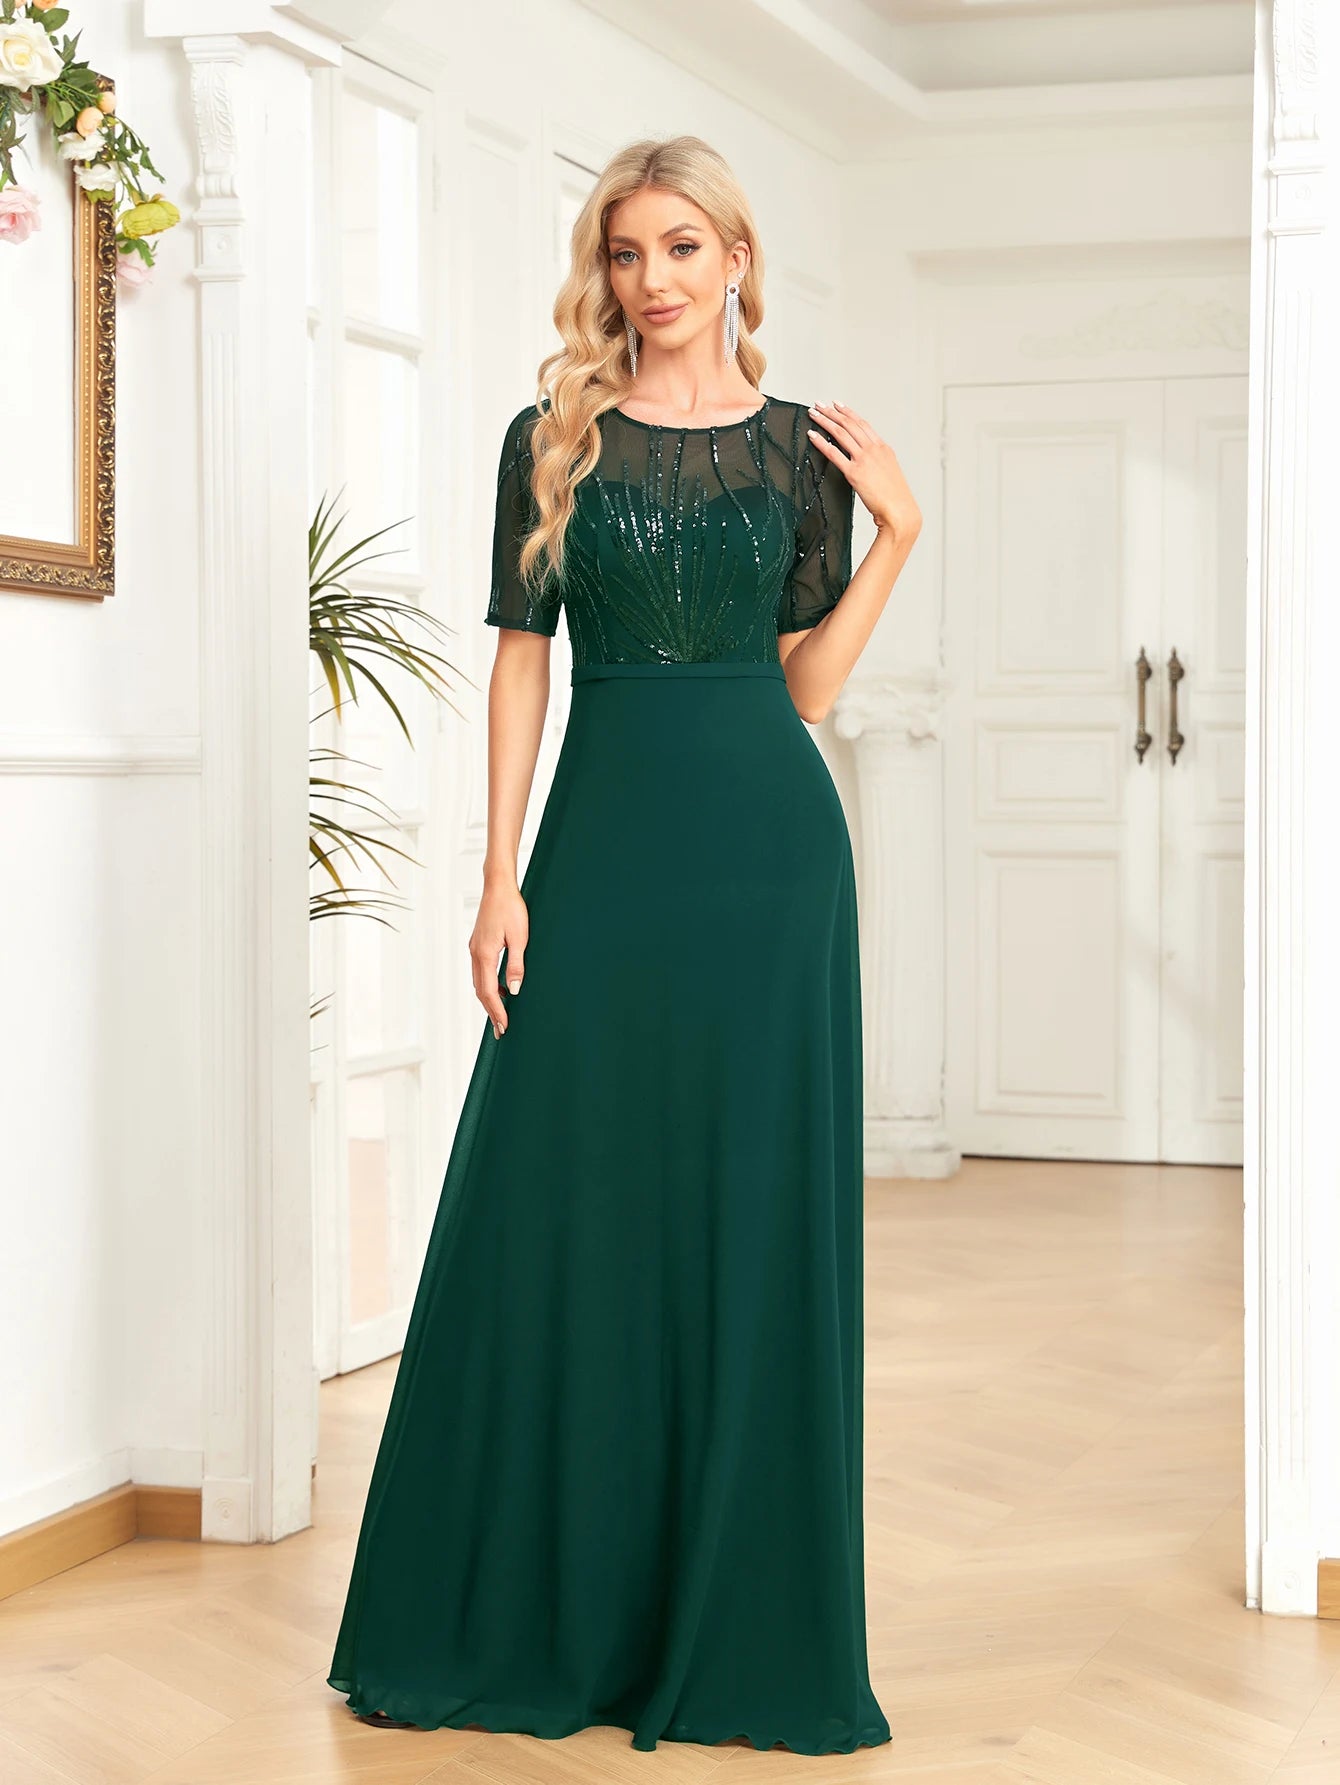 Elegant Dresses- Regal Mesh-Sleeved A-Line Gown - Floor-Length Sequin Dress- Green- Chuzko Women Clothing